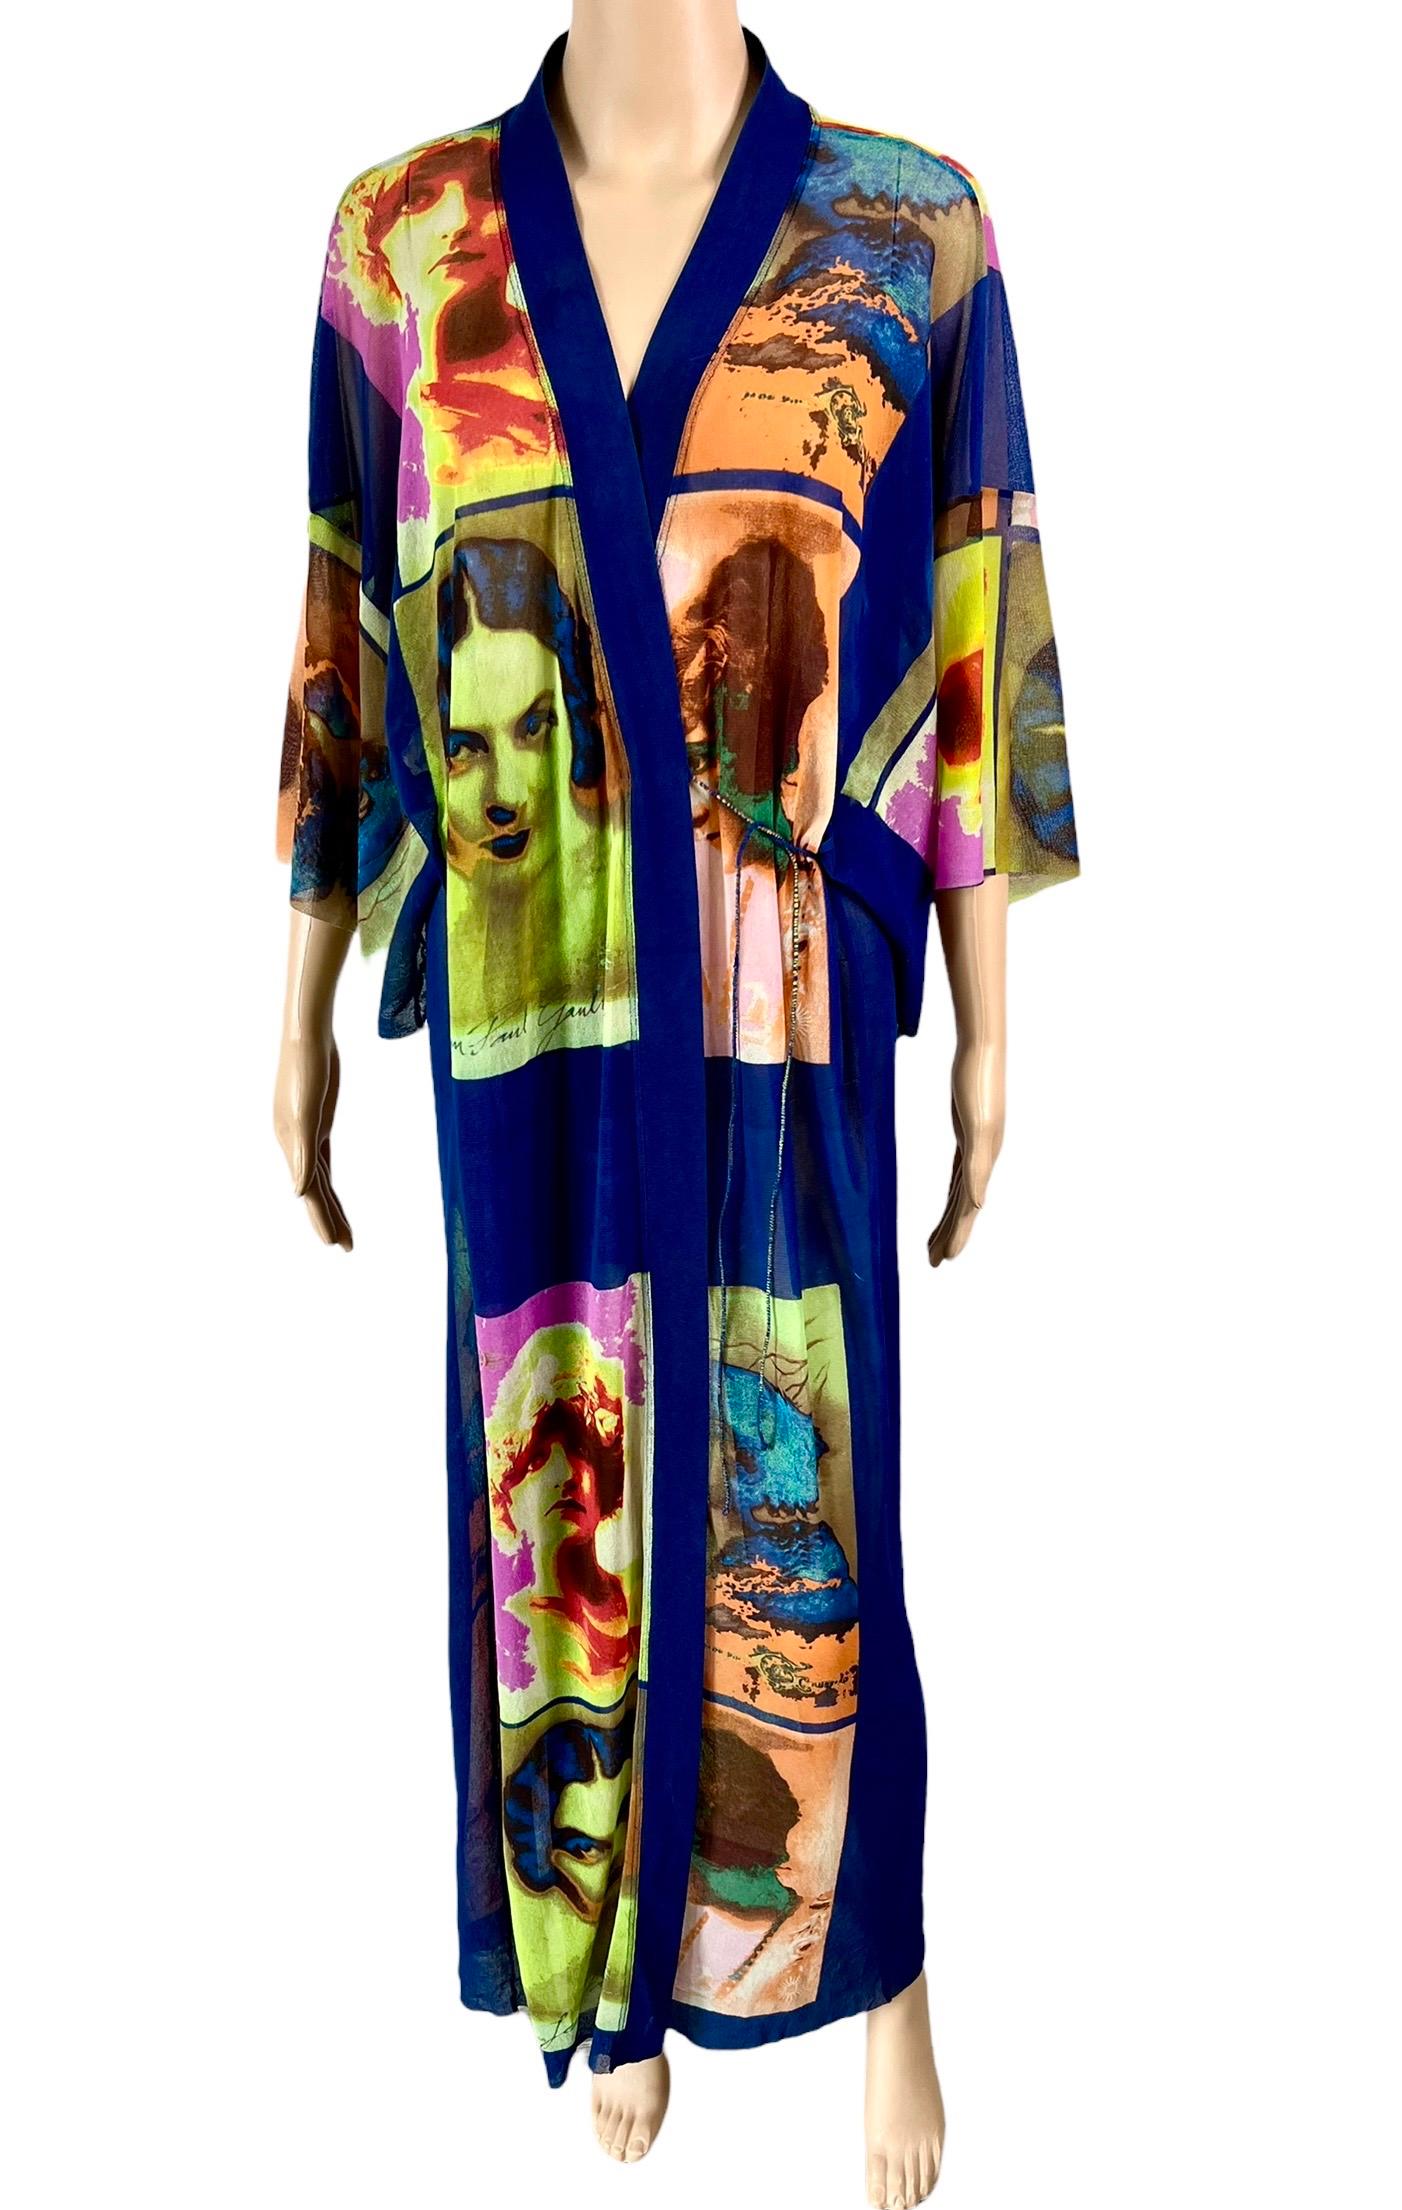 Purple Jean Paul Gaultier Soleil S/S 2002 Vintage “Portraits” Mesh Maxi Dress Kimono For Sale